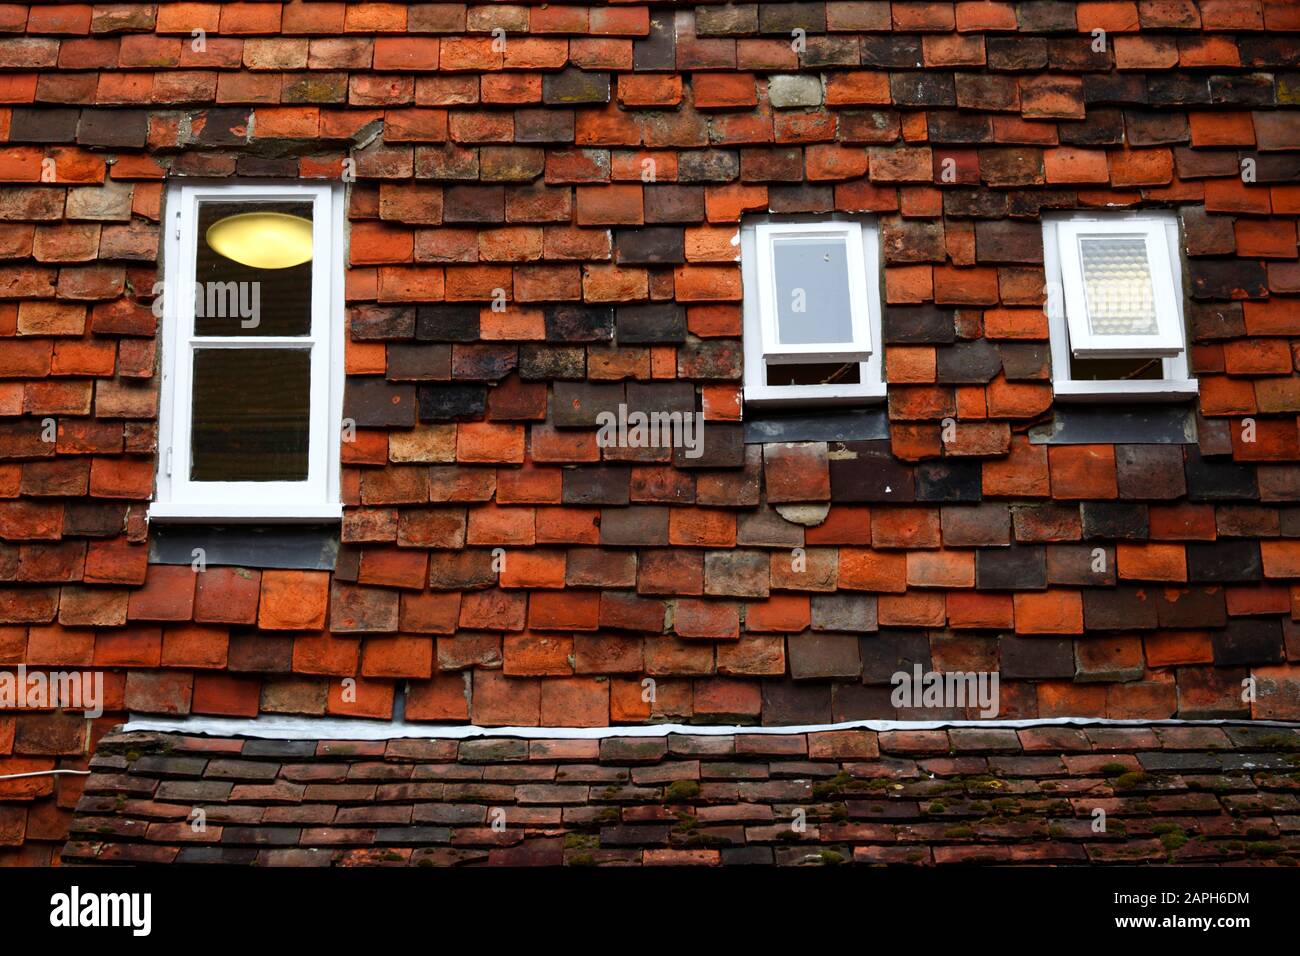 Details zu kleinen Fenstern, die in senkrechte Fliesen (eine typische Bautechnik von Weald of Kent) an der Wand, Tenterden, Kent, England, gesetzt sind Stockfoto